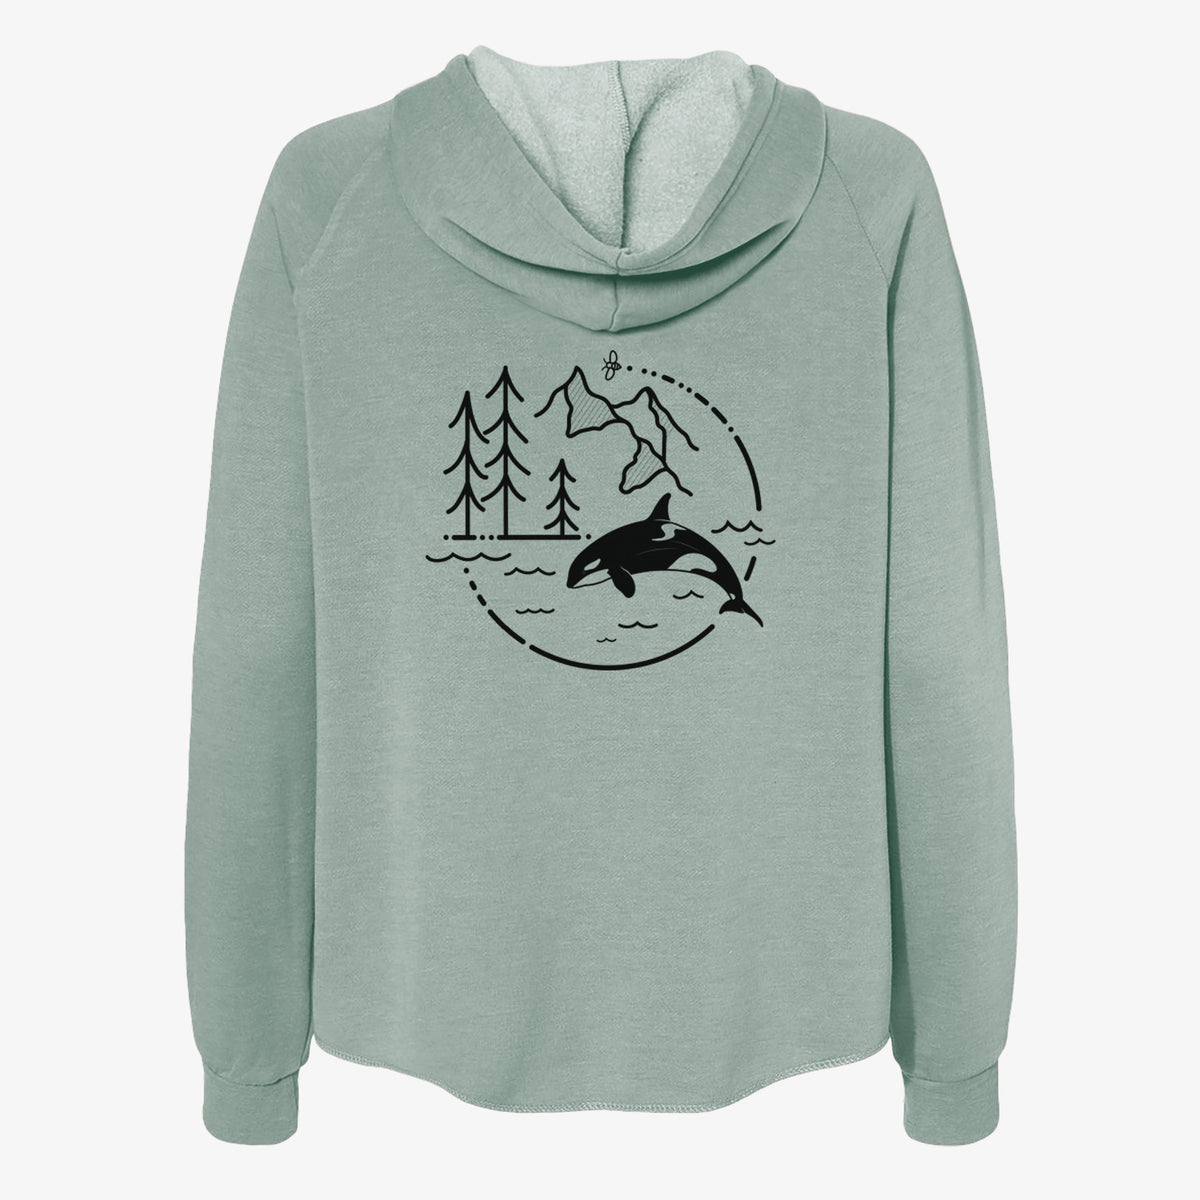 It&#39;s All Connected - Orca - Women&#39;s Cali Wave Zip-Up Sweatshirt